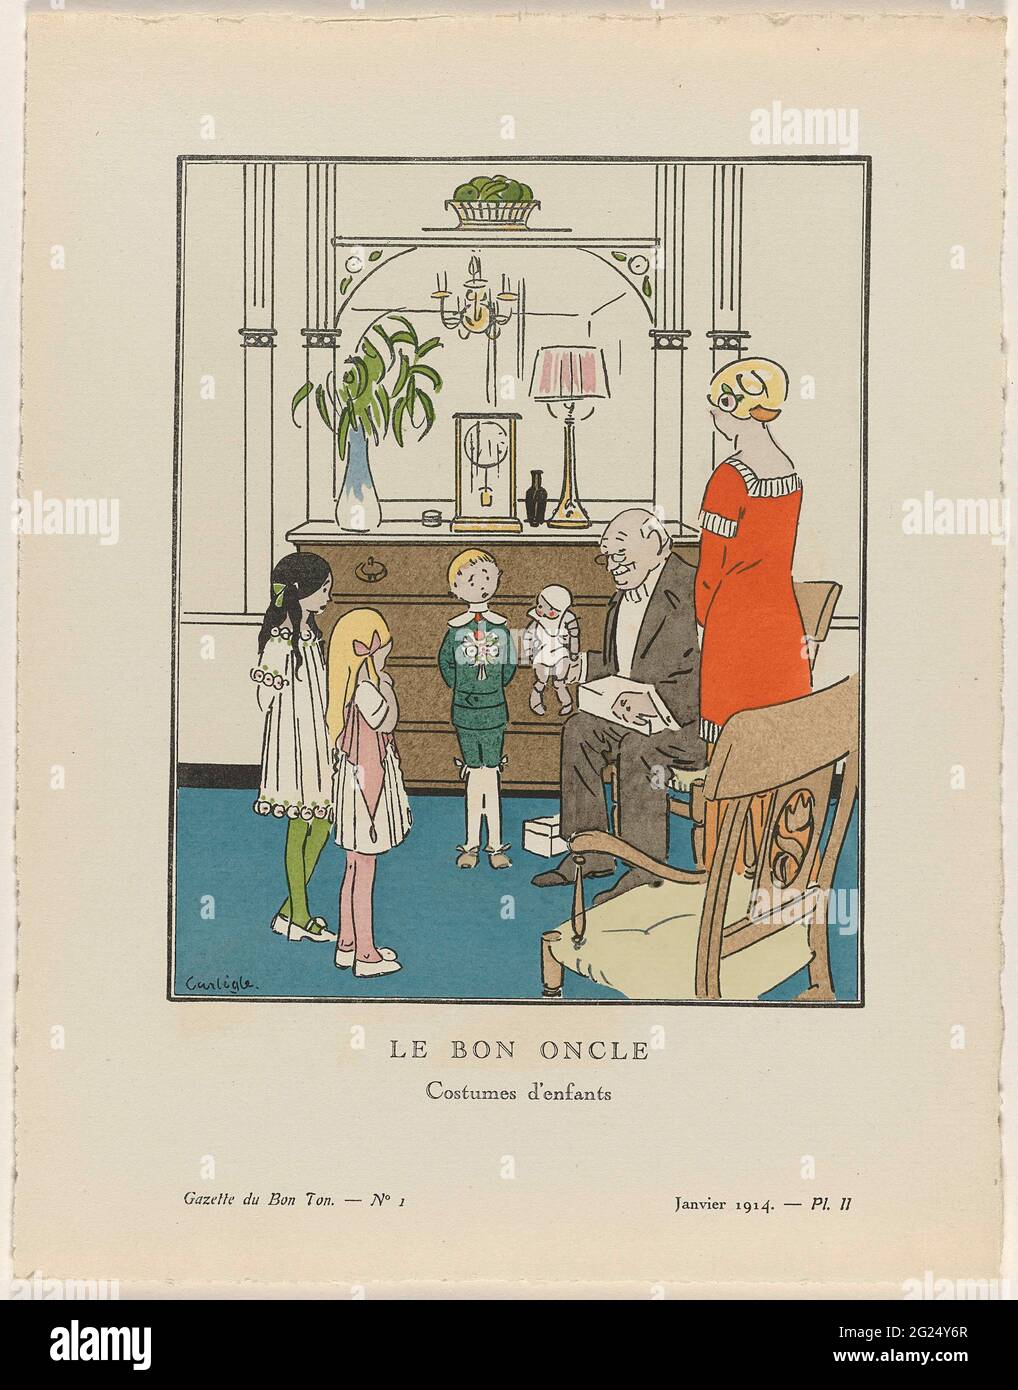 Gazette du Bon Ton, 1914 - No. 1, pl. II: Le Bon Oncle / Costumes  d'Enfants. Interni con tre bambini, vestiti con 'abiti semplici per  bambini' secondo la moda del 1914. Si